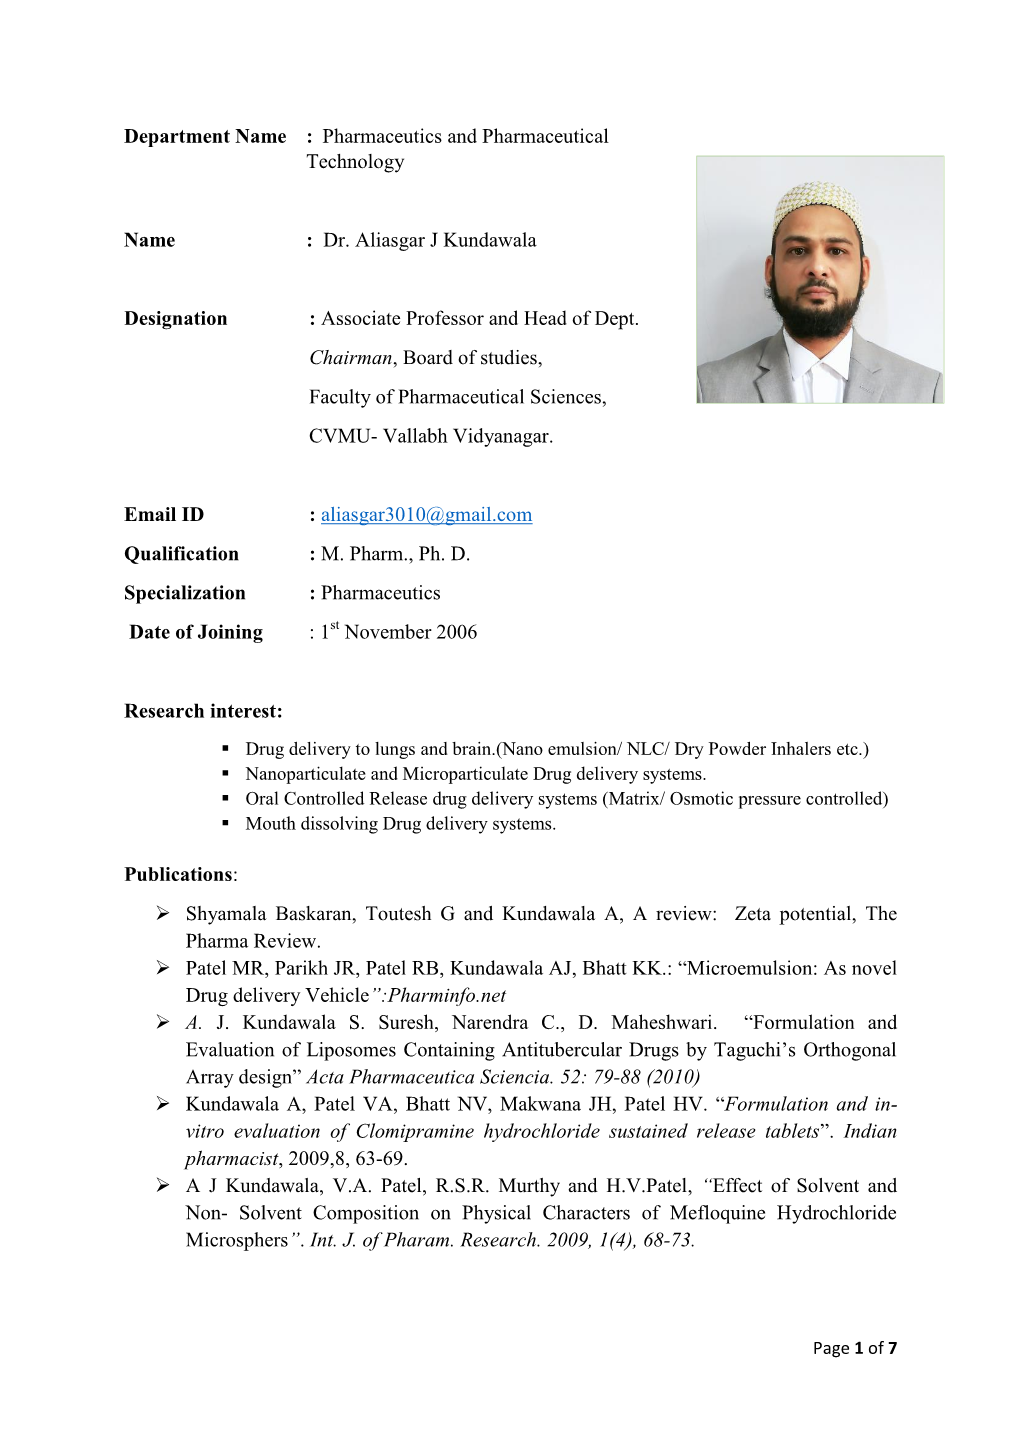 Dr. Aliasgar J Kundawala Designation